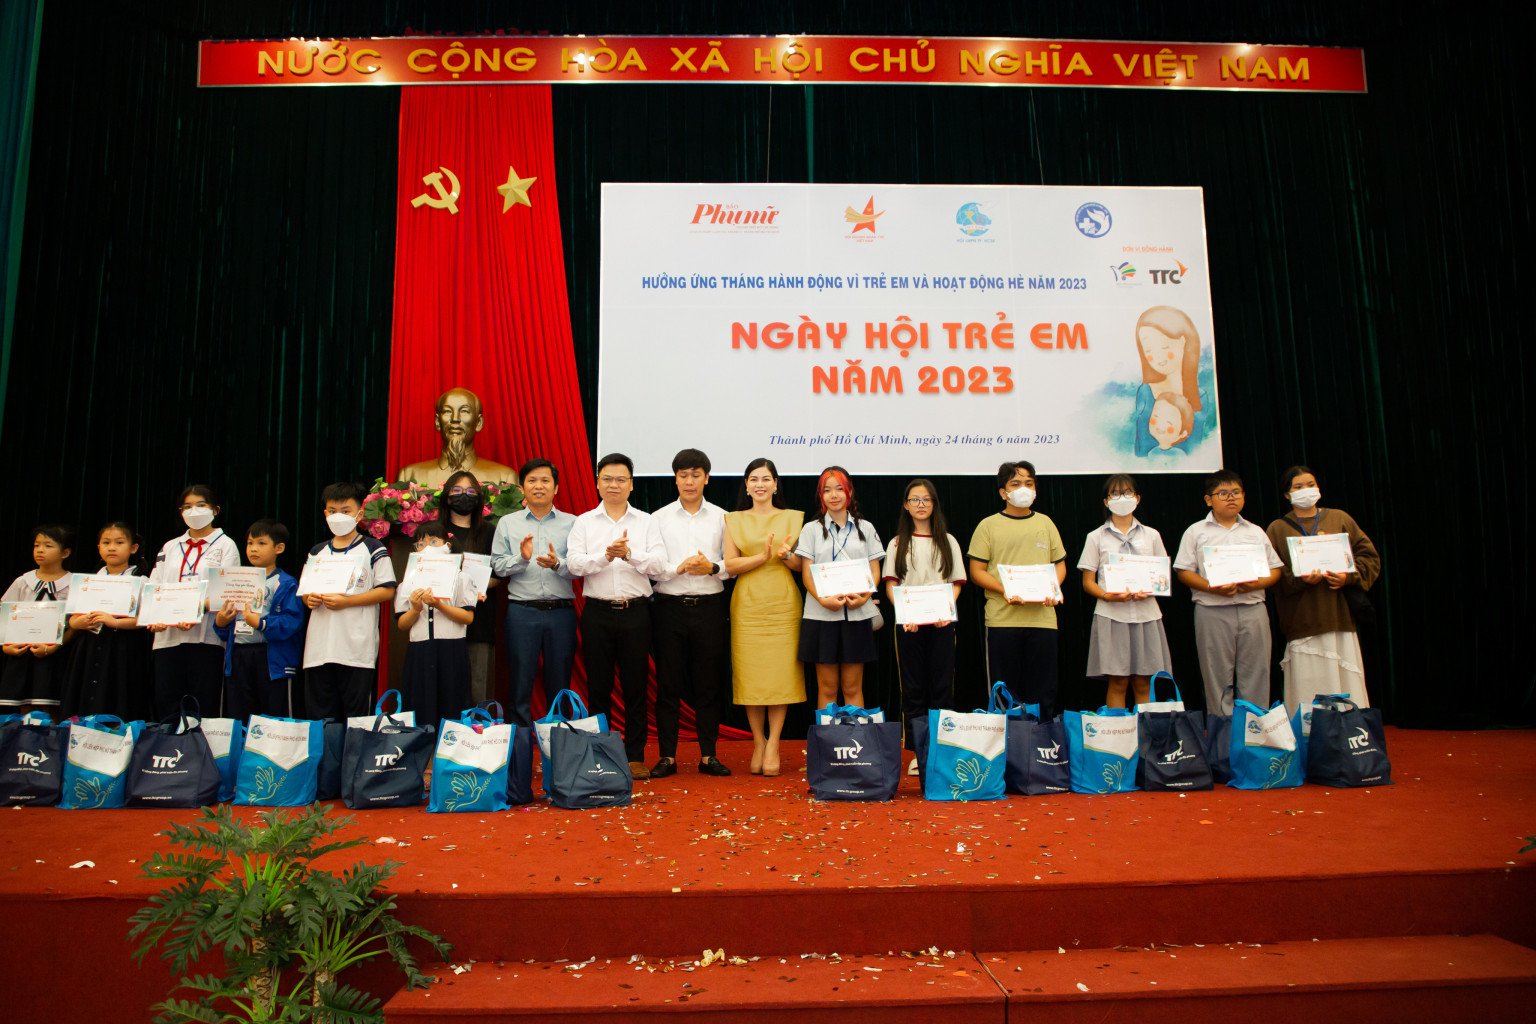 Doanh nhân Hoàng Hữu Thắng hưởng ứng tháng hành động vì trẻ em và hoạt động hè năm 2023 tại Thành phố Hồ Chí Minh.